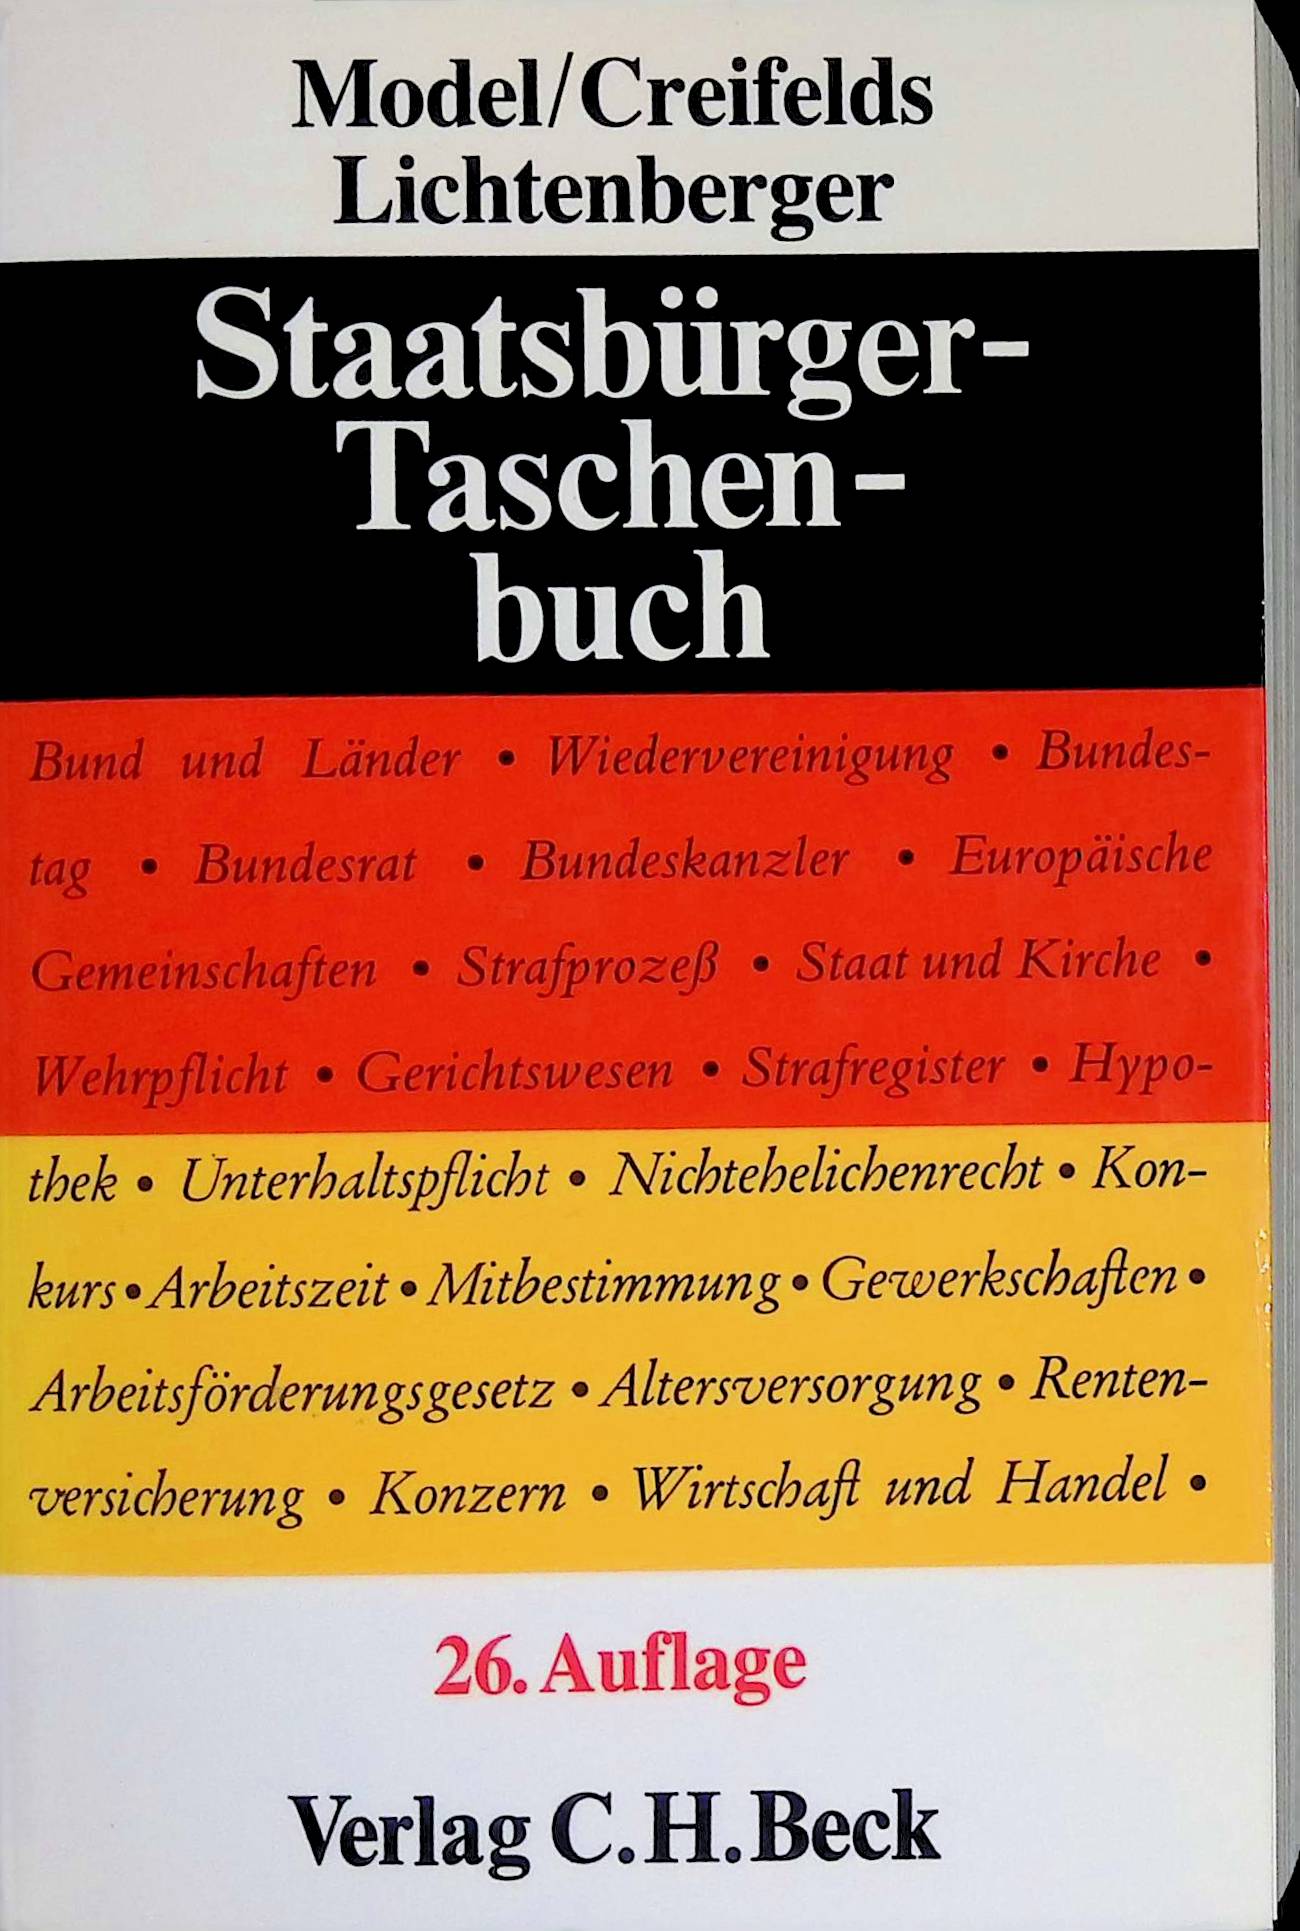 Staatsbürger-Taschenbuch : alles Wissenswerte über Staat, Verwaltung, Recht und Wirtschaft. - Model, Otto, Carl Creifelds und Gustav Lichtenberger